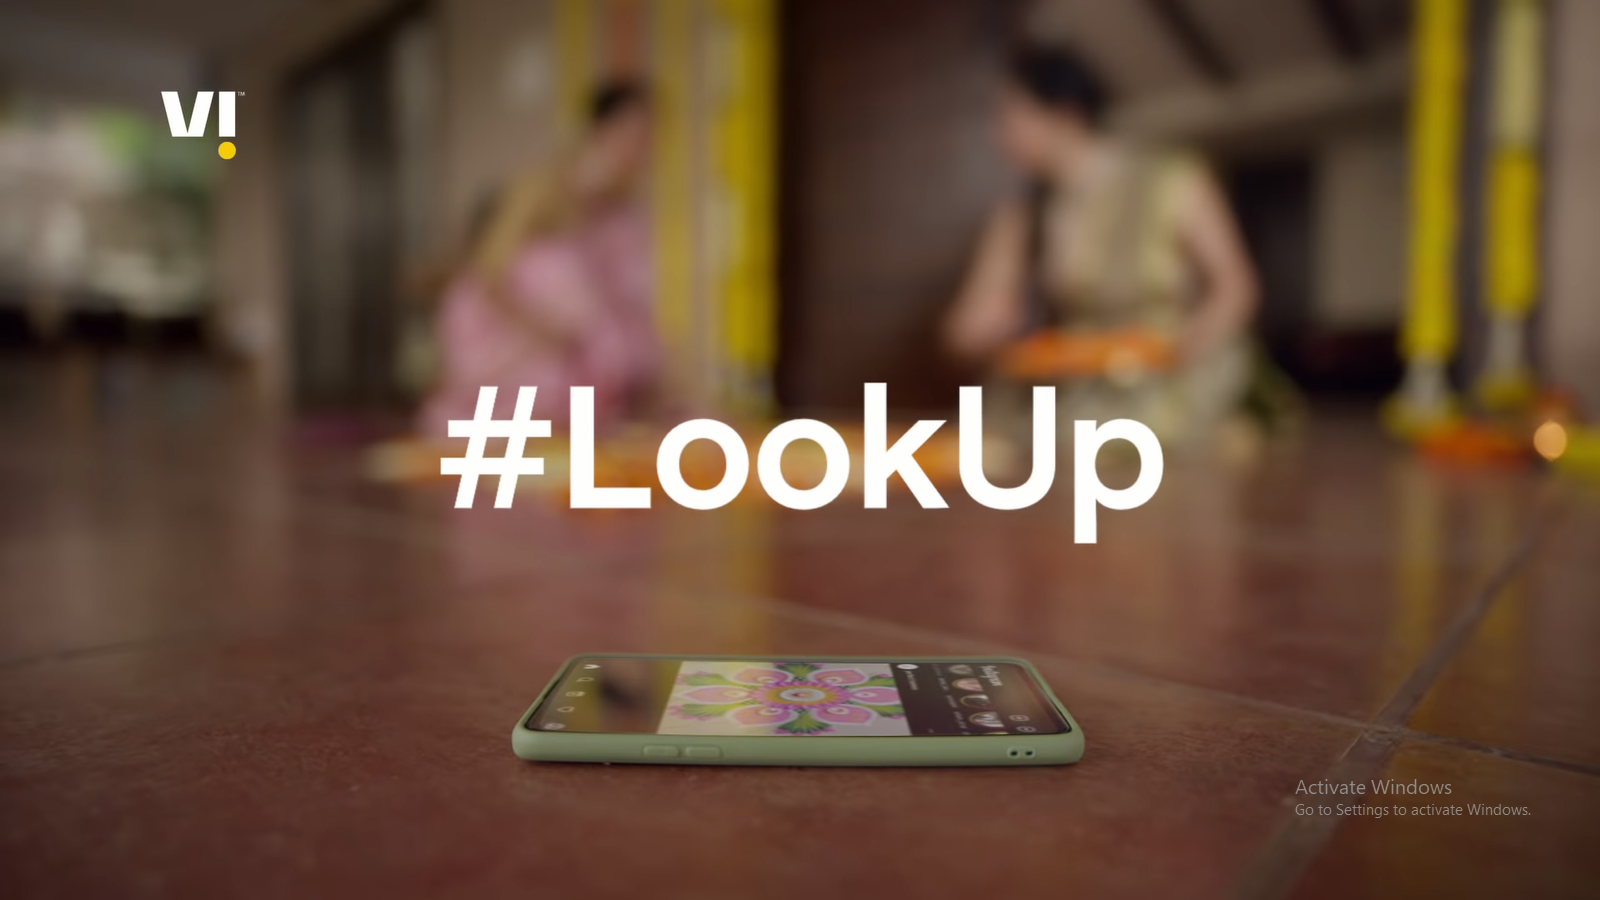 #LookUp - hãy đặt điện thoại xuống và nhìn lên thế giới thực là điều mà Vi muốn gửi gắm